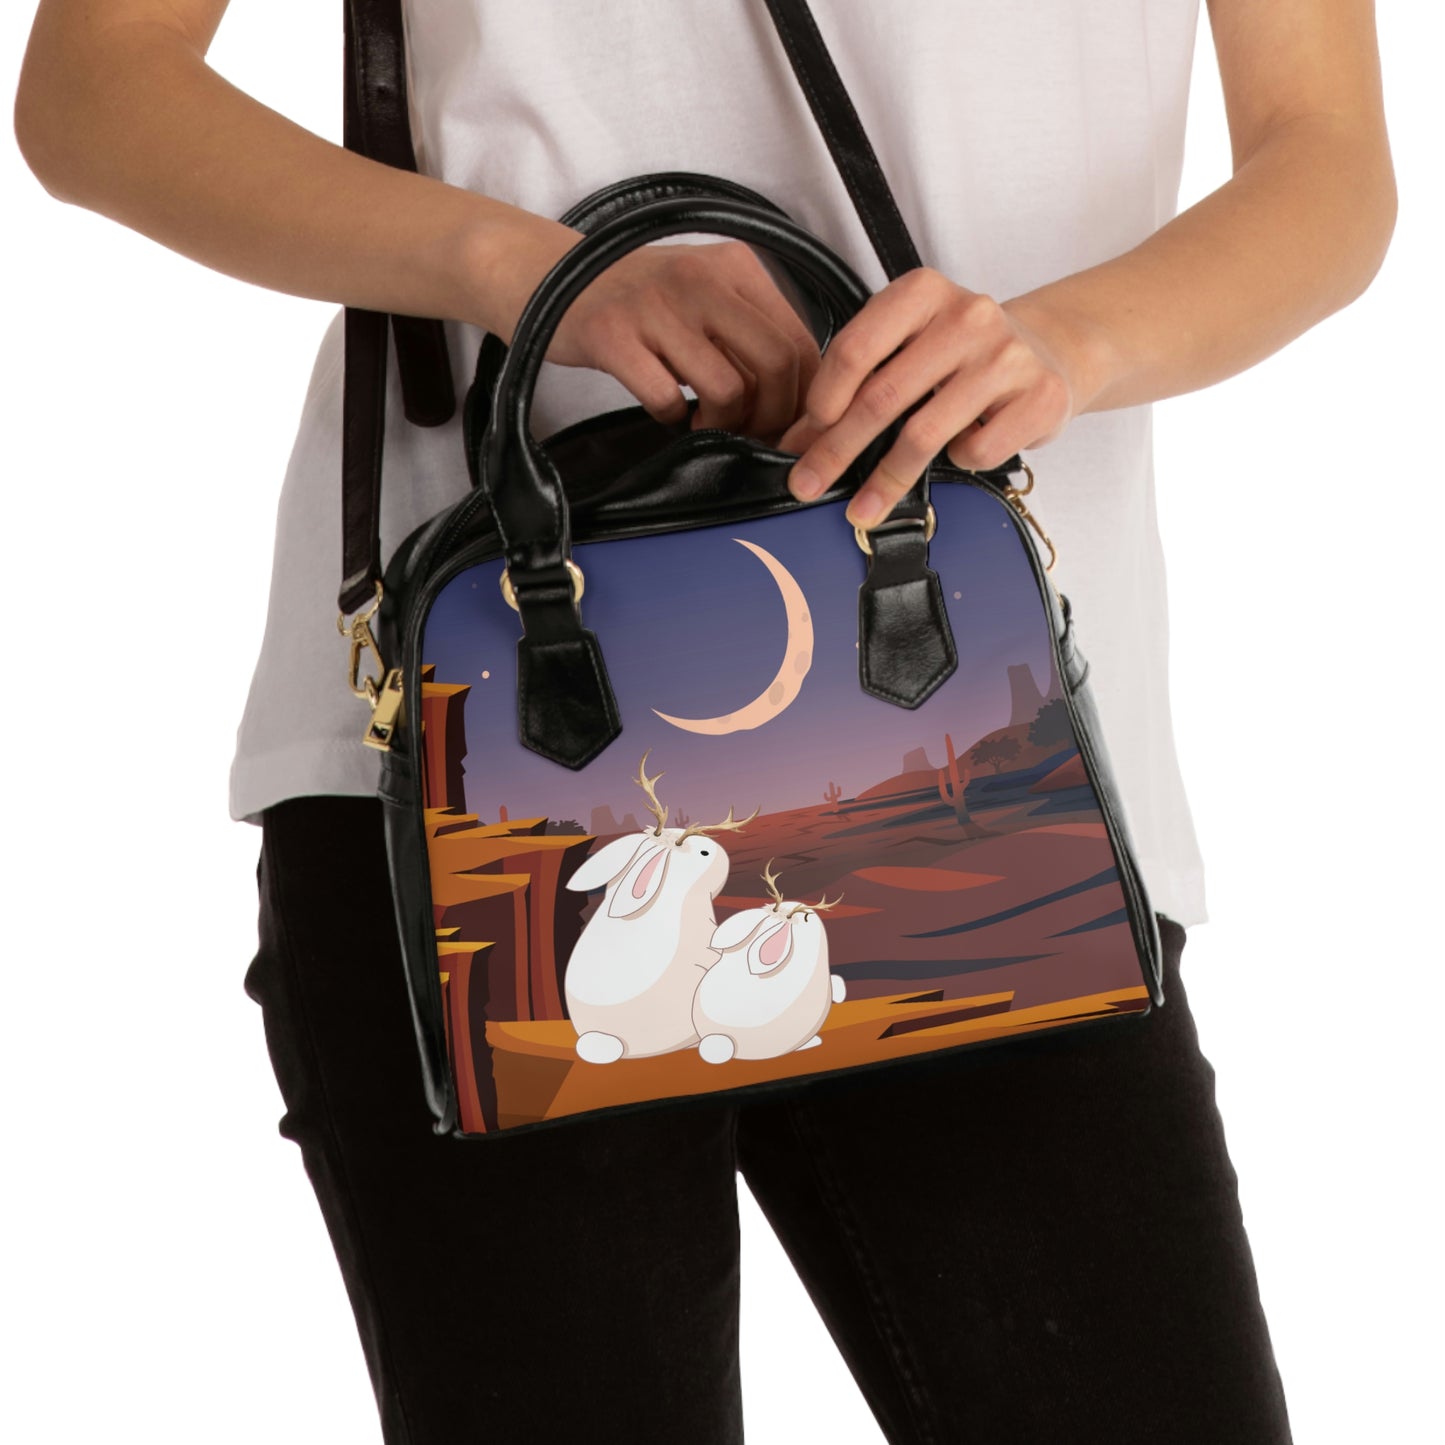 Jackalope Baby and Mom Desert Sunset Shoulder Handbag